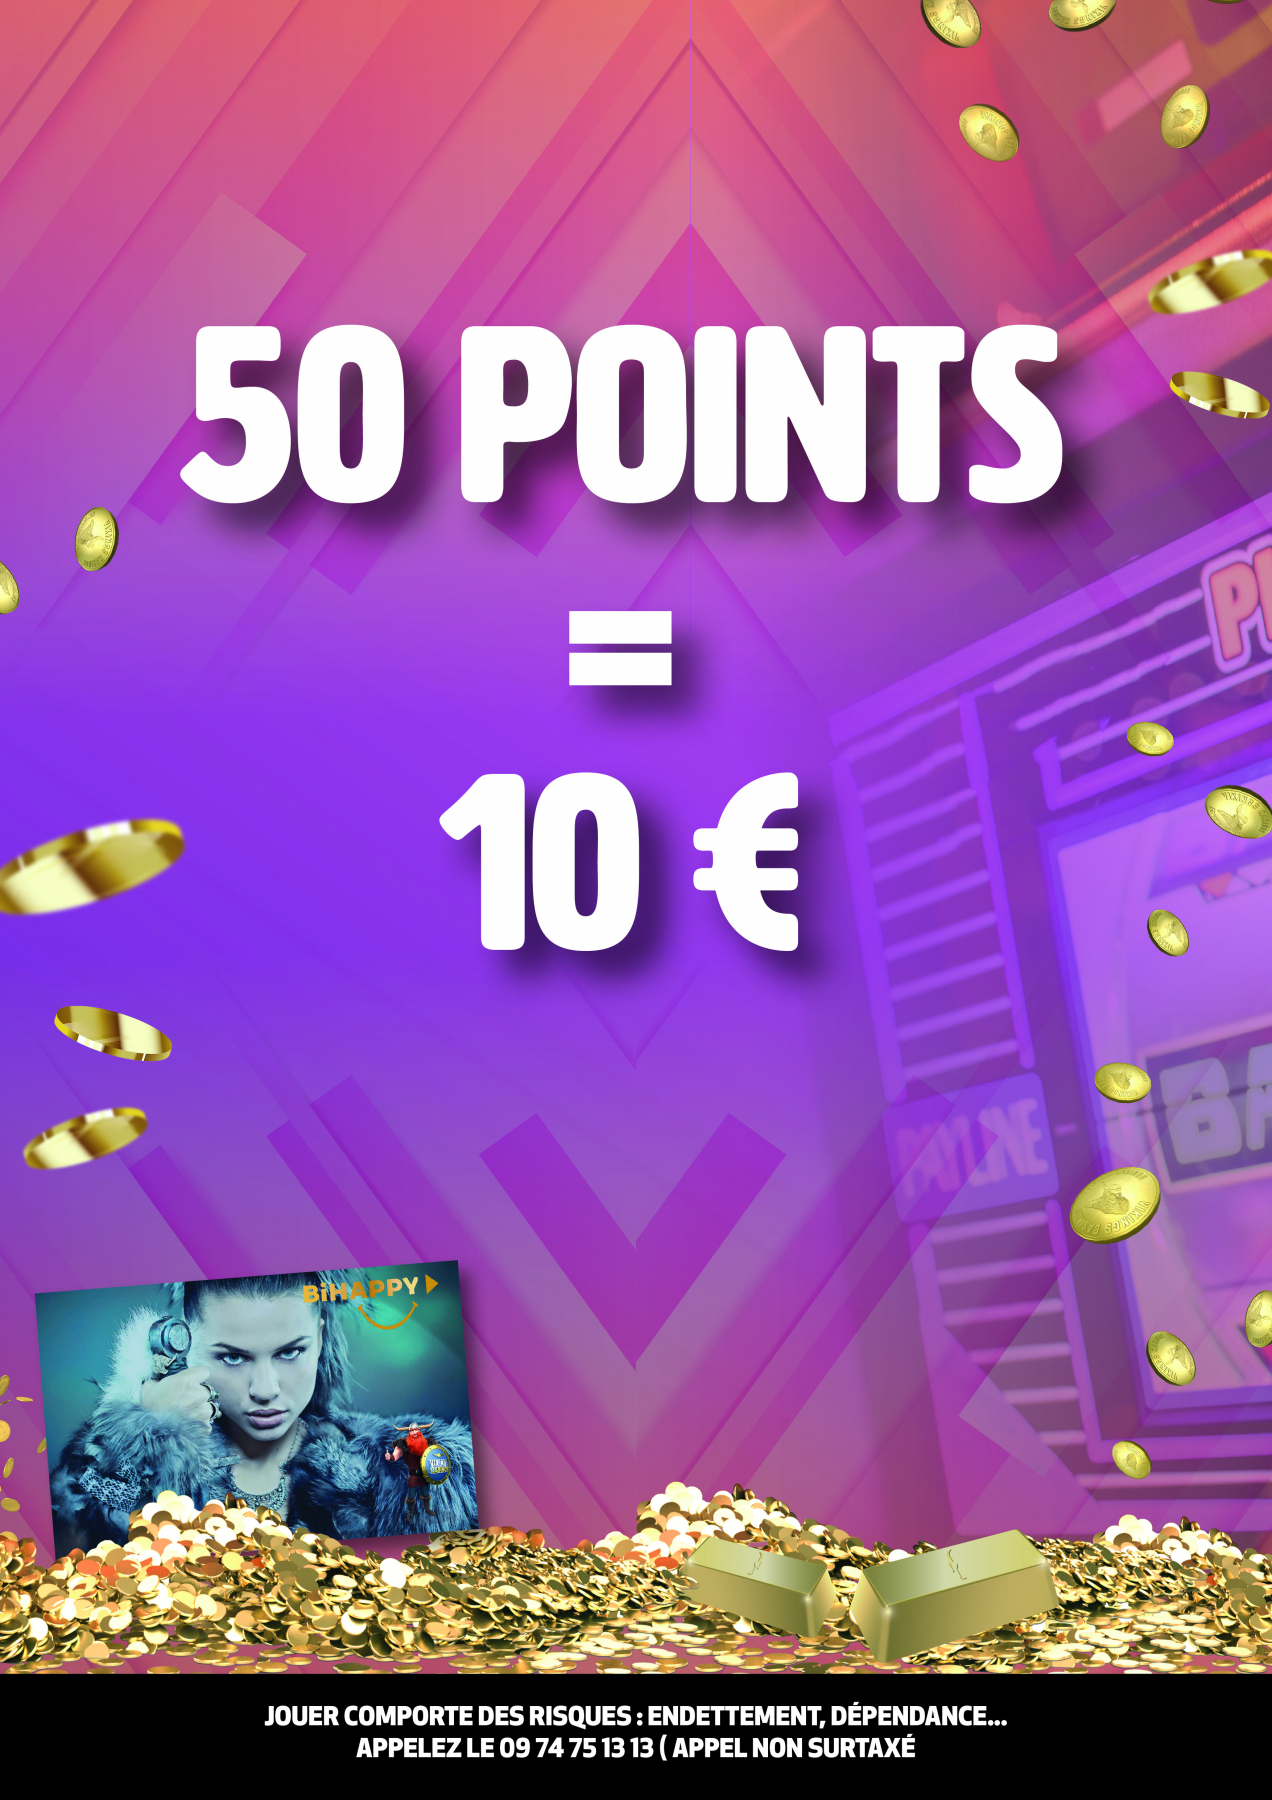 10 € contre 50 Points